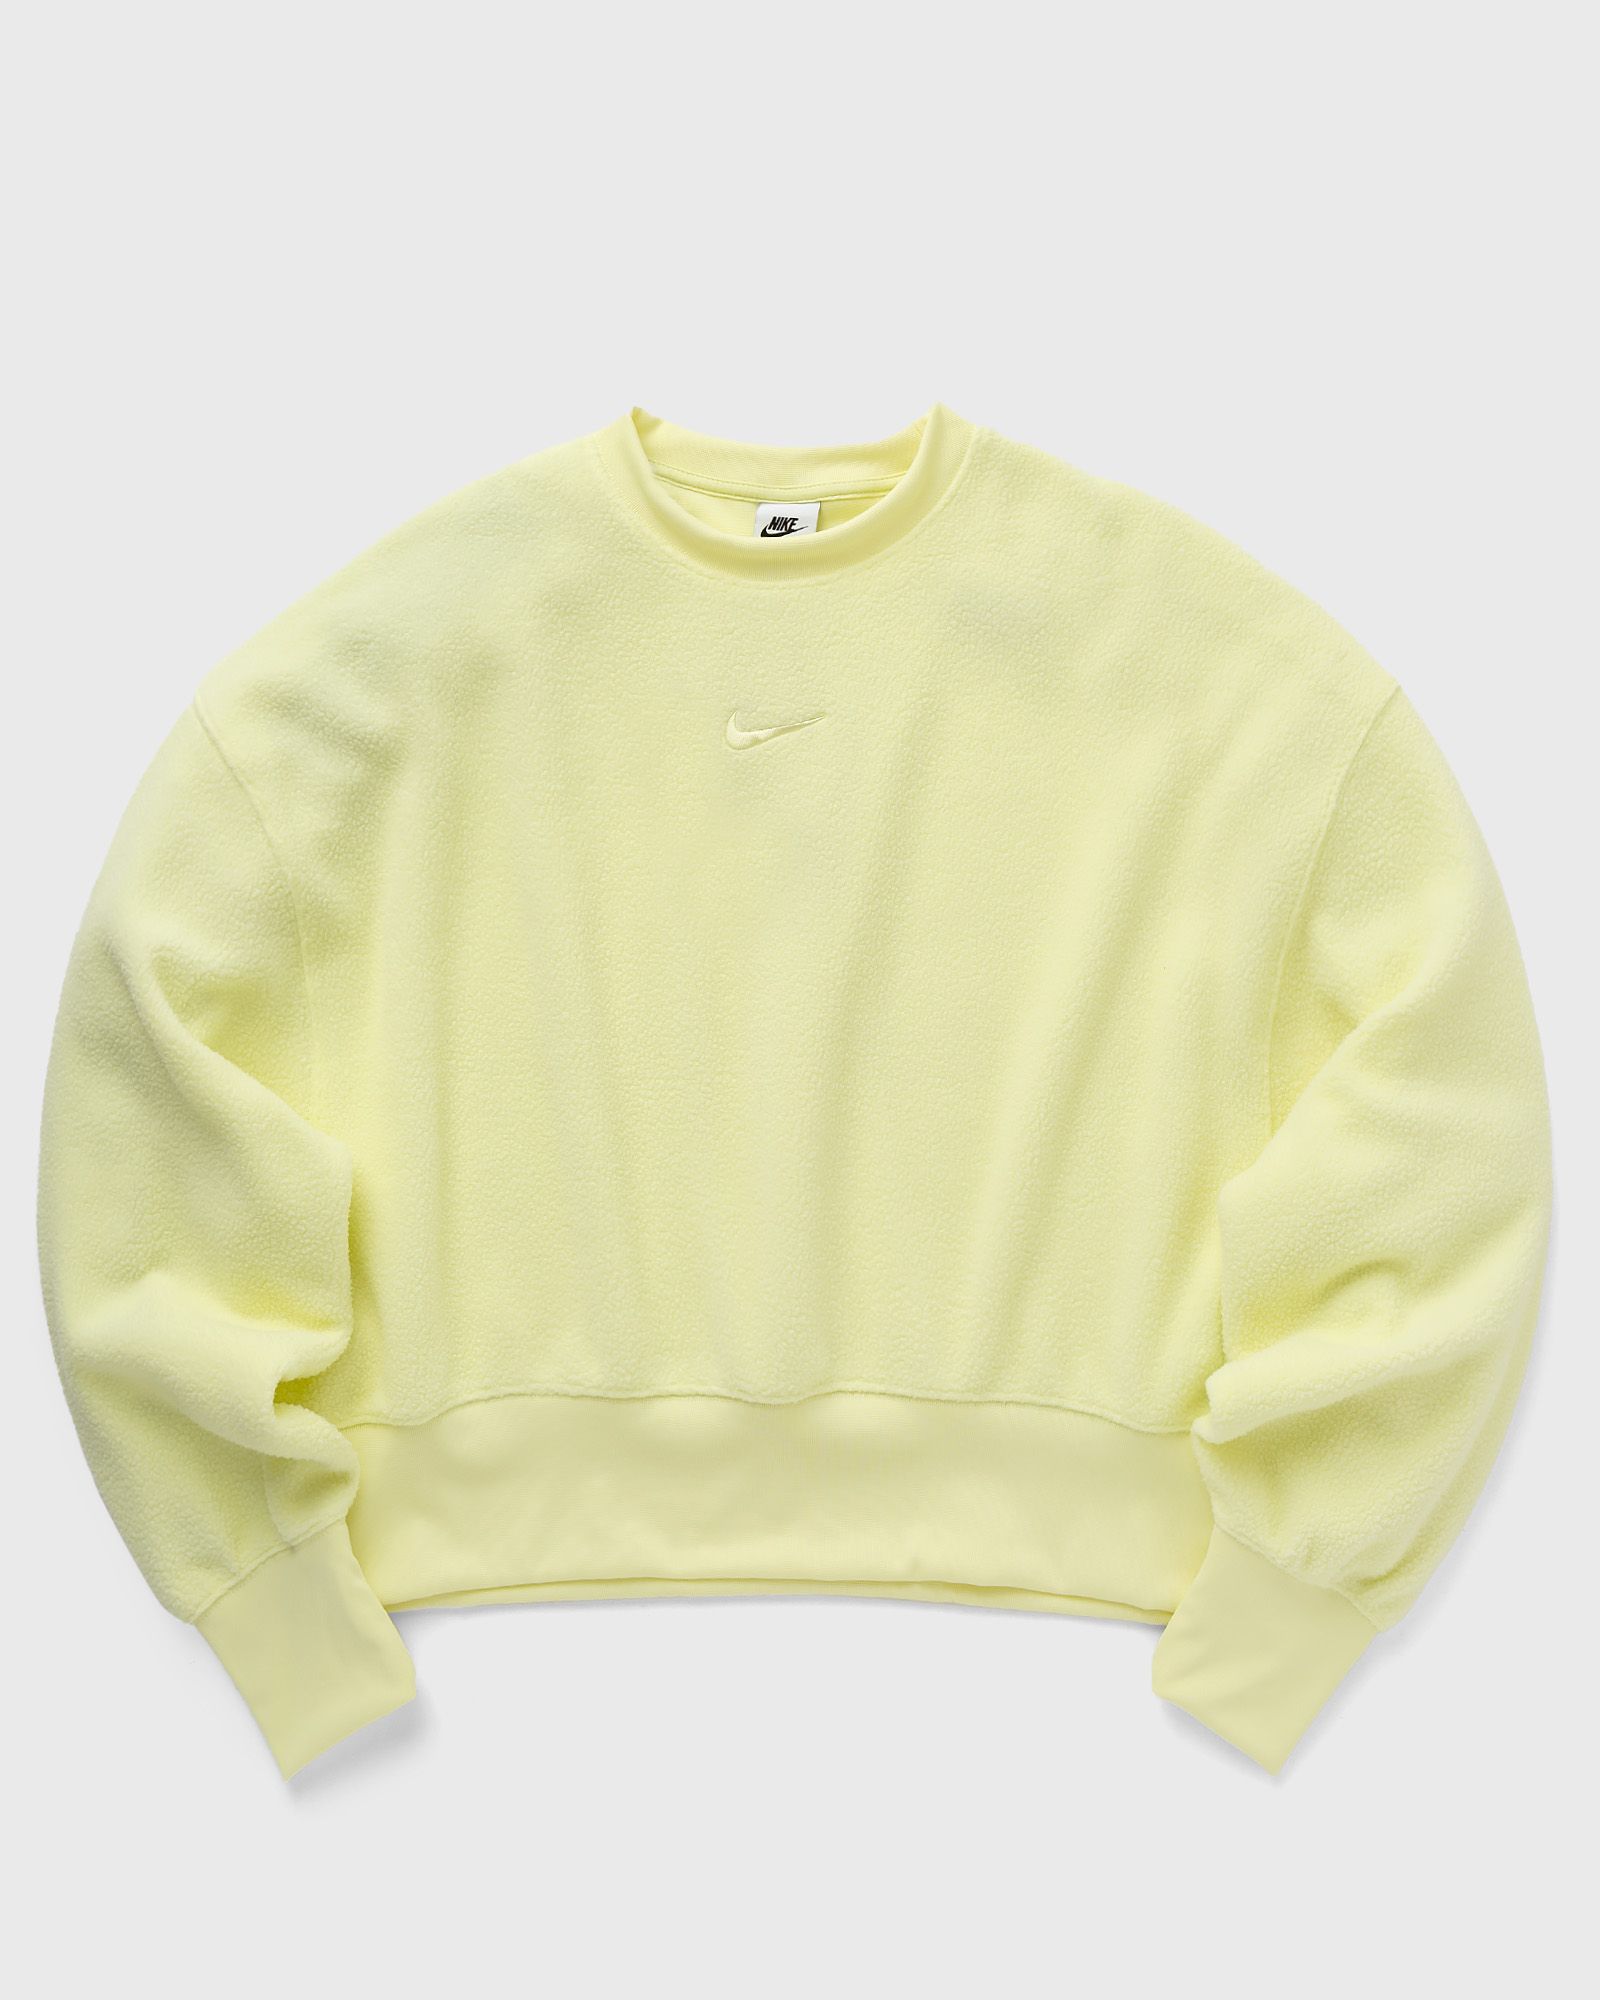 Nike - sportswear plush women's mod crop crew-neck sweatshirt women sweatshirts yellow in größe:xs